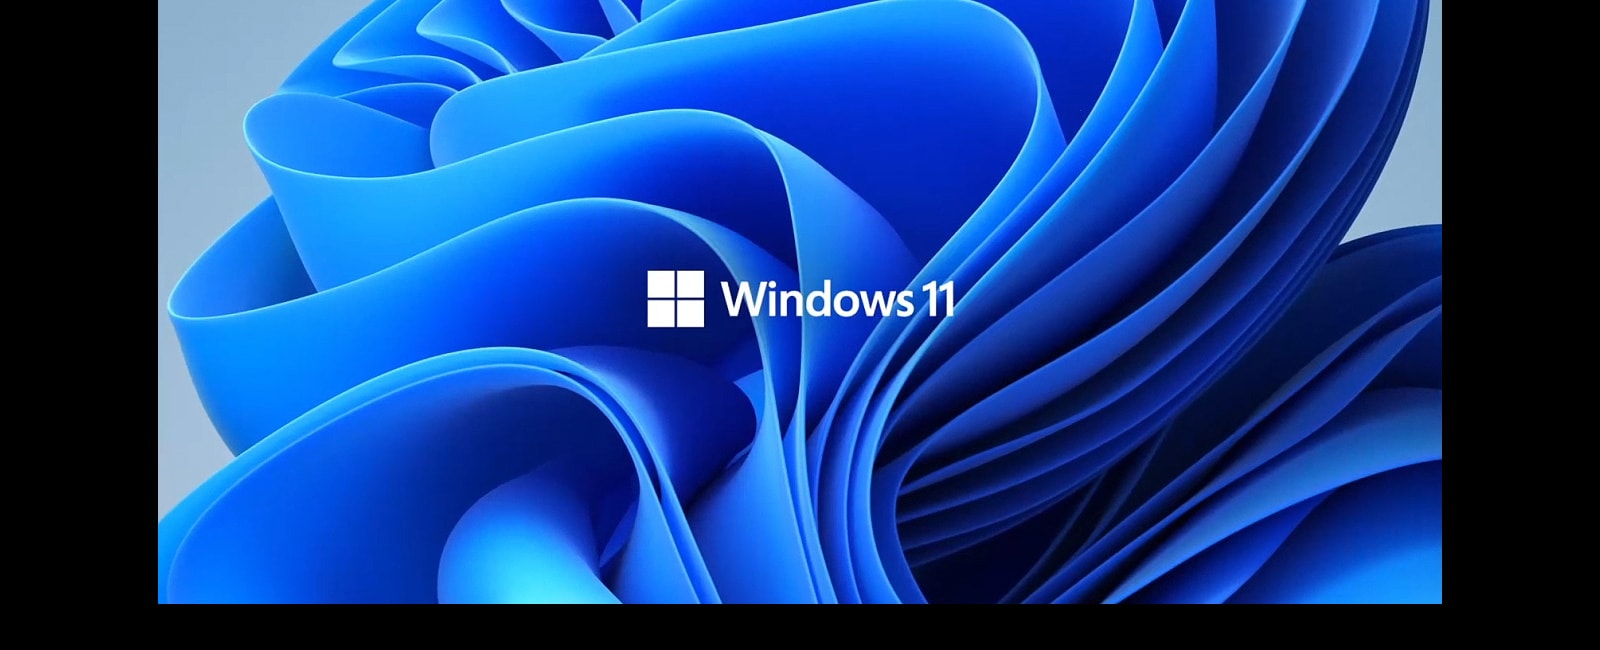 Muestra el logotipo de Windows11 y la imagen de fondo.